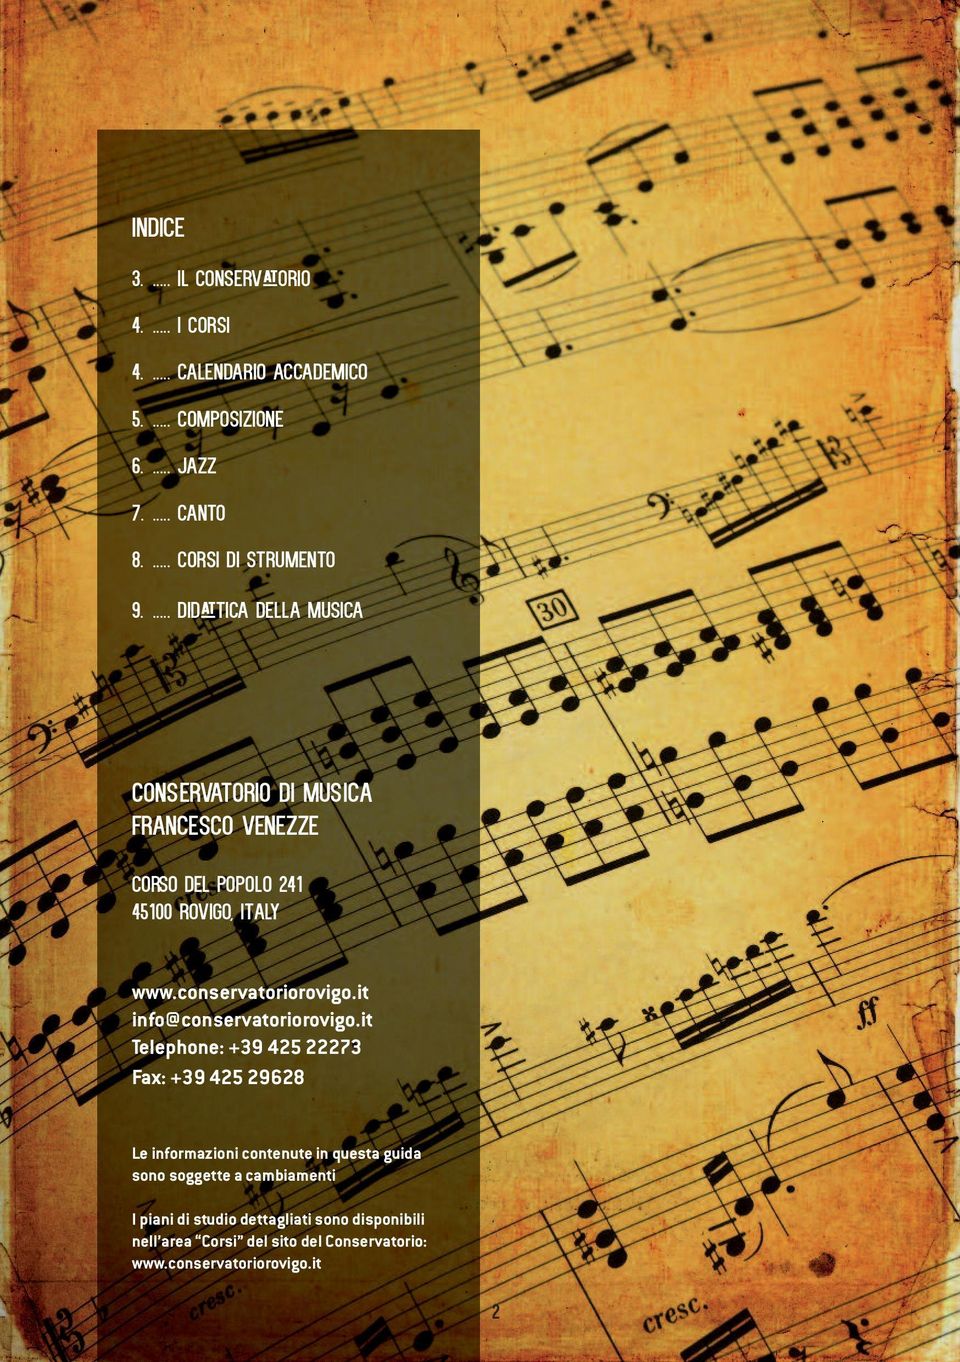 ... DIDATTICA DELLA MUSICA Conservatorio di Musica Francesco Venezze Corso del Popolo 241 45100 Rovigo, Italy www.conservatoriorovigo.